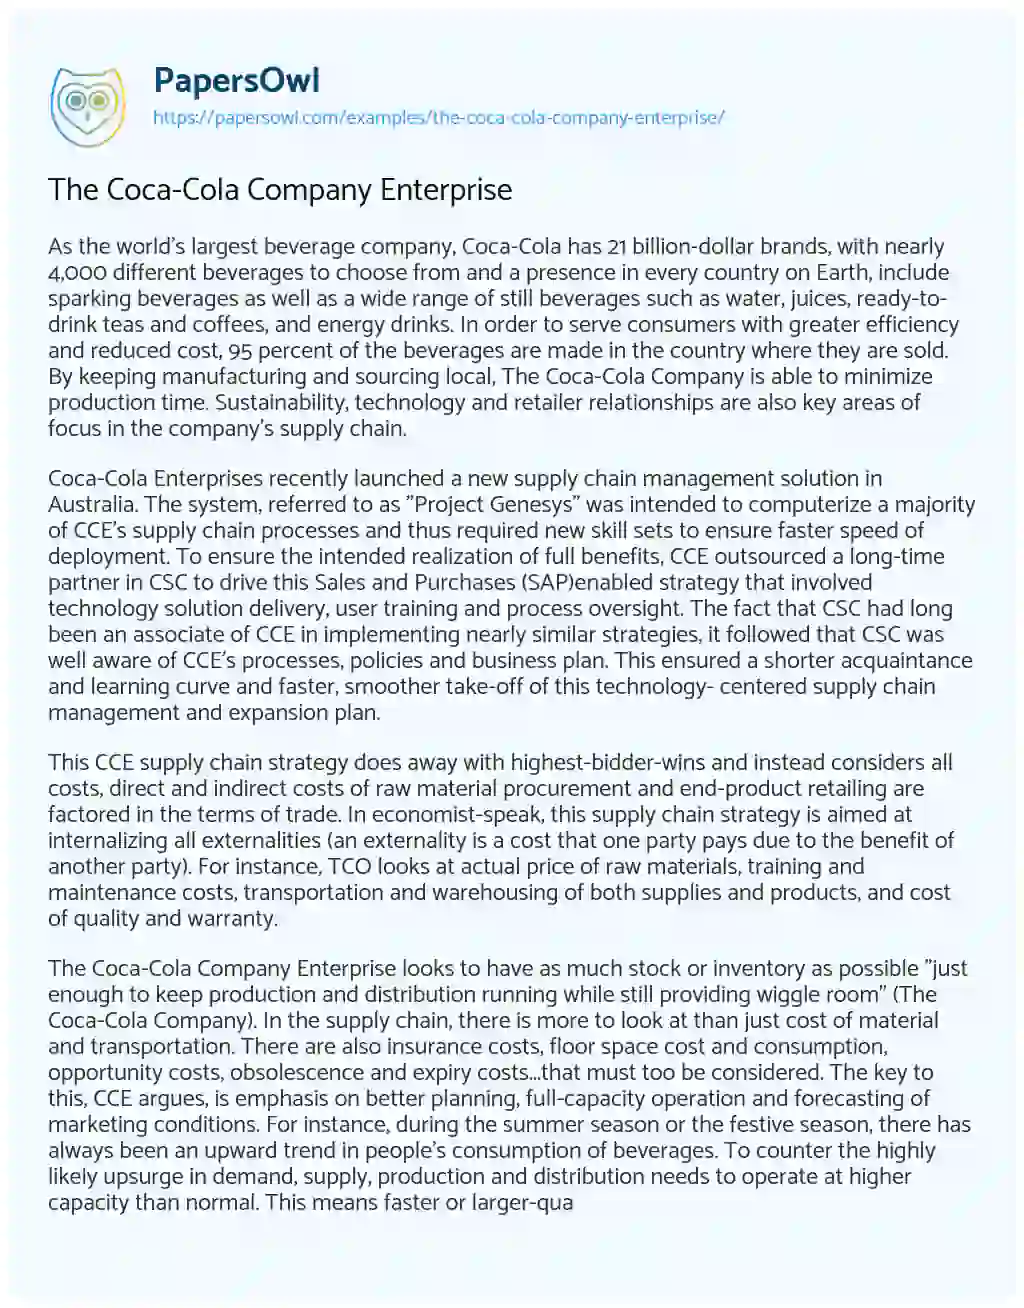 Essay on The Coca-Cola Company Enterprise